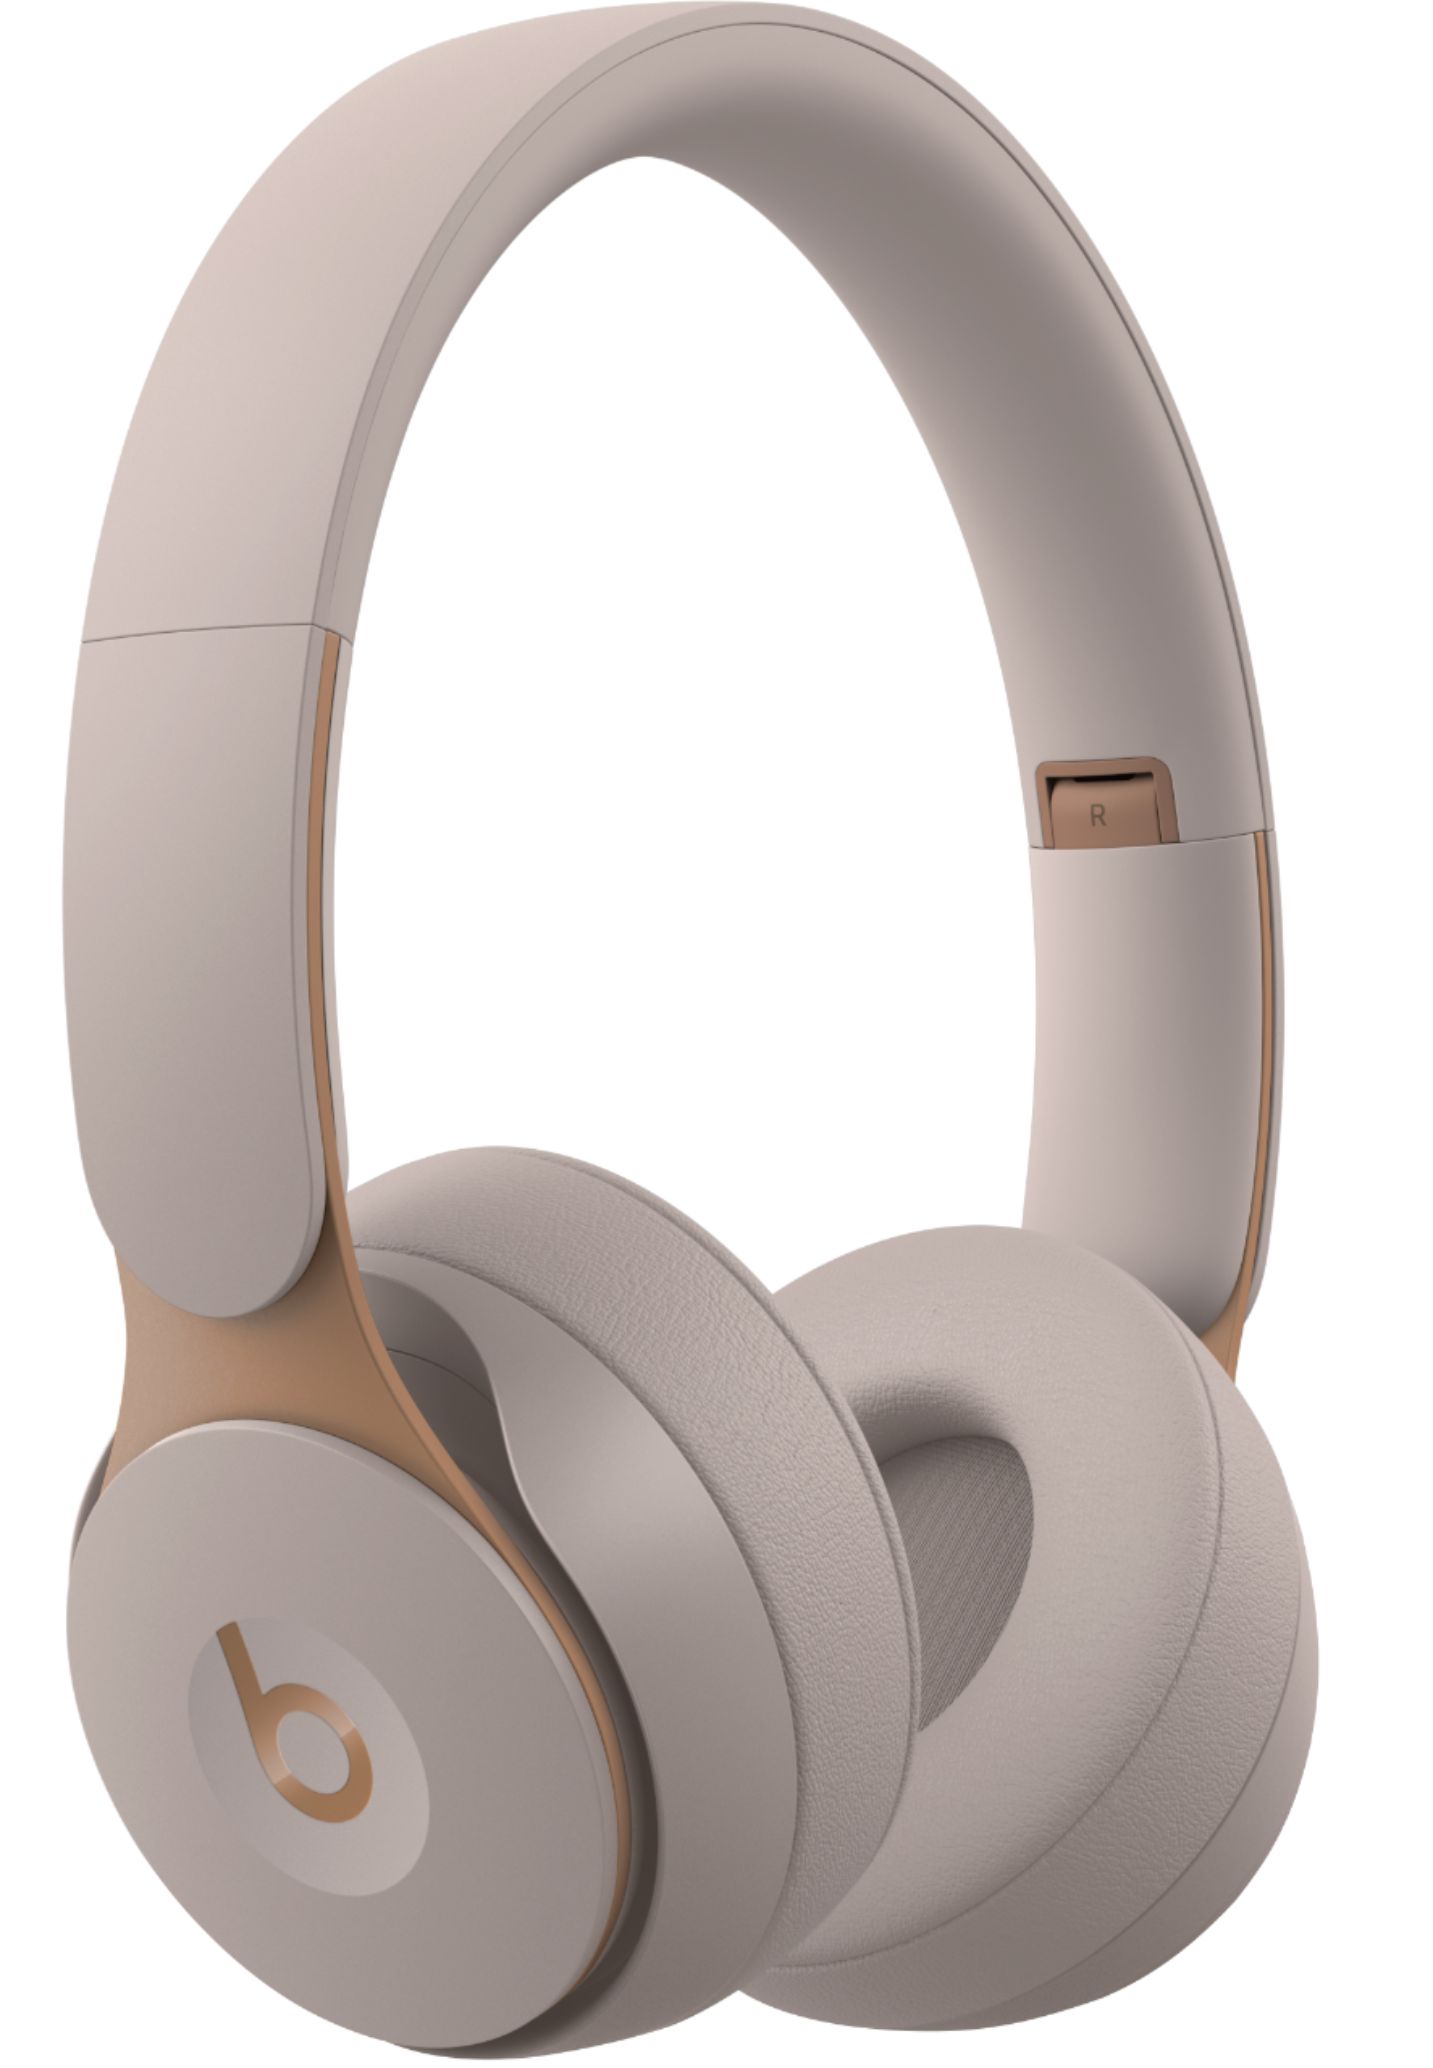 オーディオ機器 ヘッドフォン Best Buy: Beats by Dr. Dre Solo Pro Wireless Noise Cancelling On-Ear  Headphones Gray MRJ72LL/A